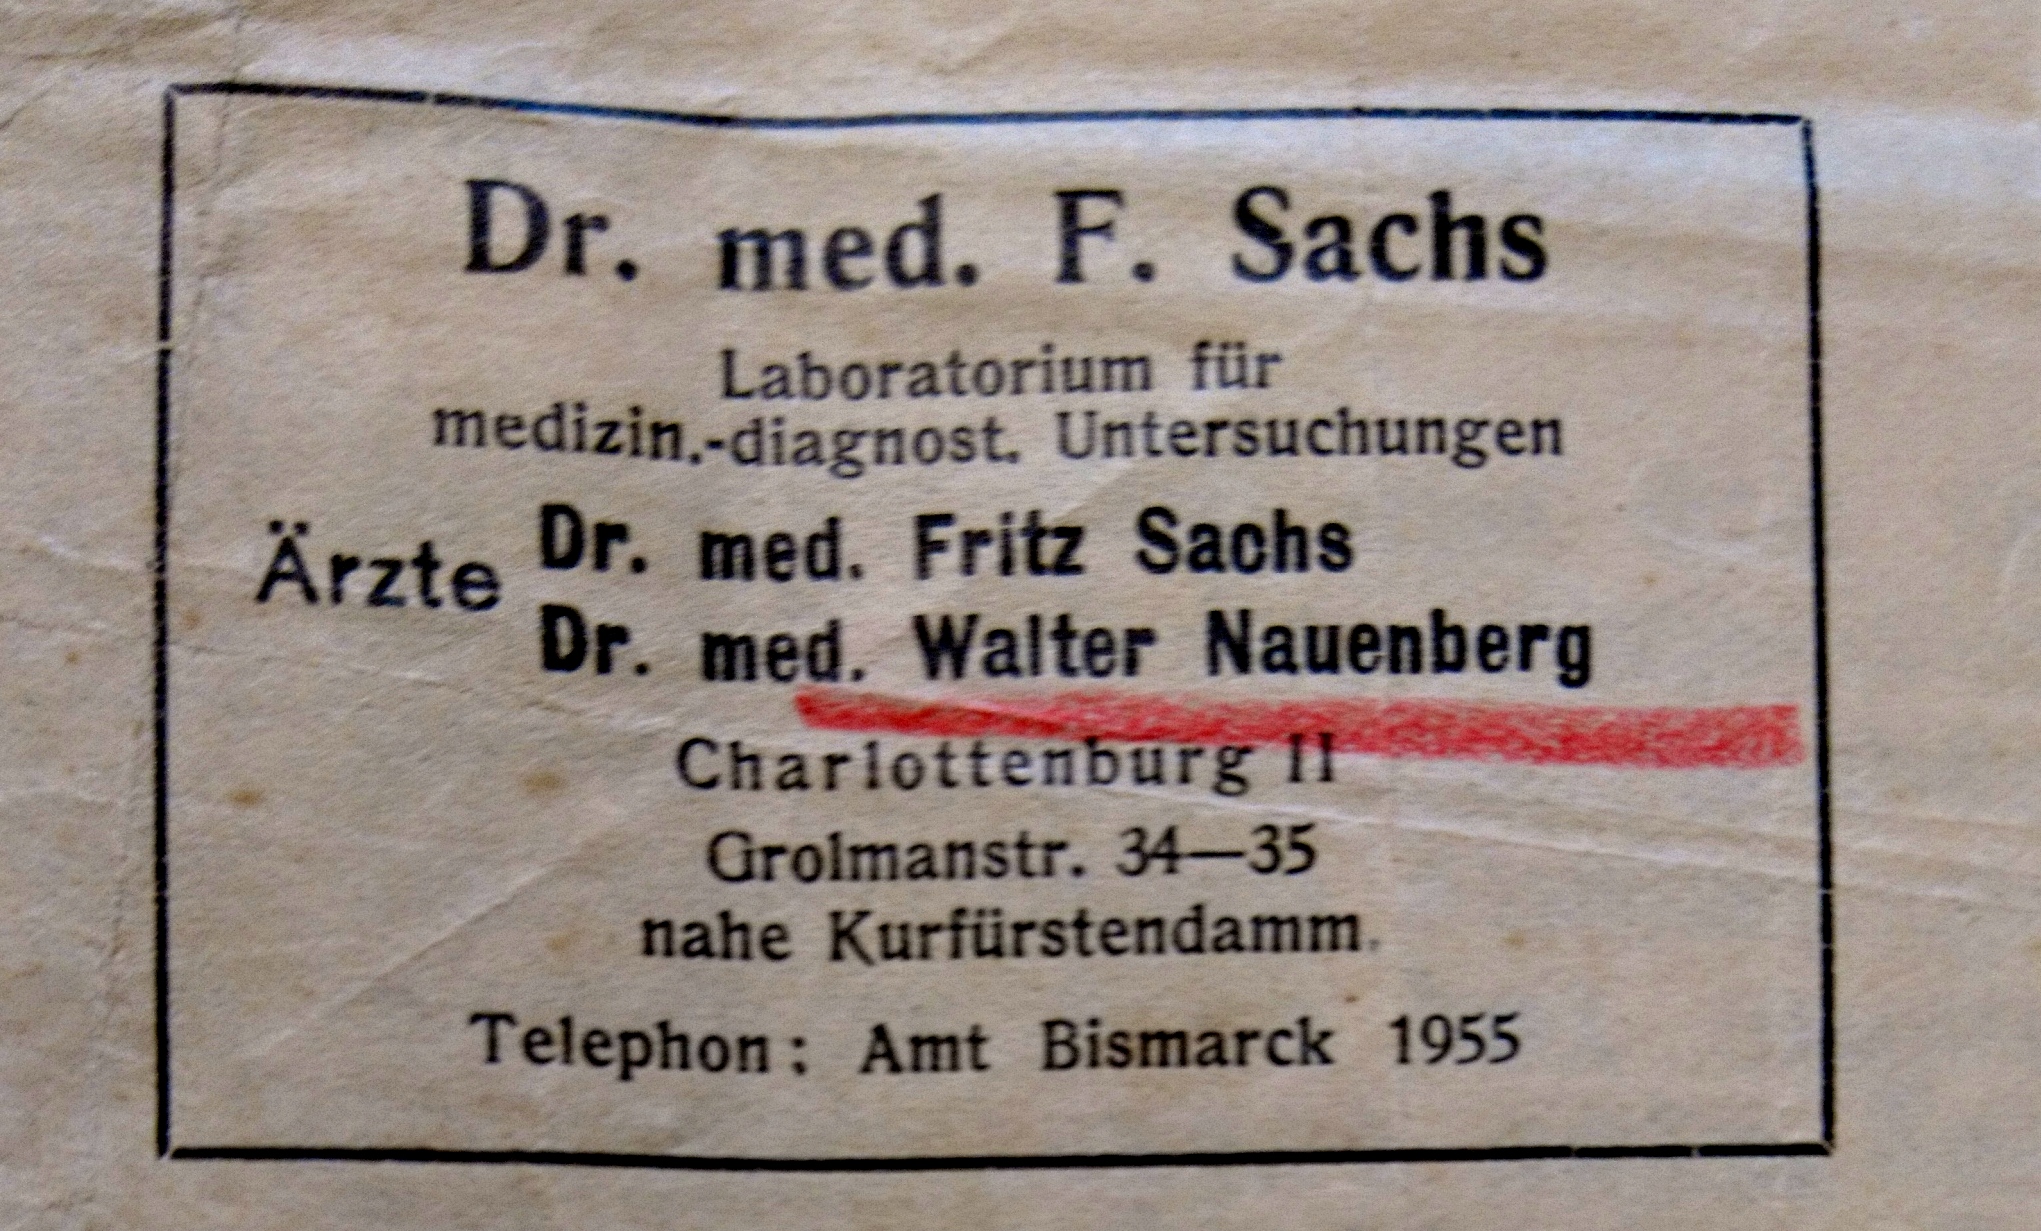 Practice Dr. Fritz Sachs / Dr. W. Nauenberg. Source: Entschädigungsbehörde Berlin